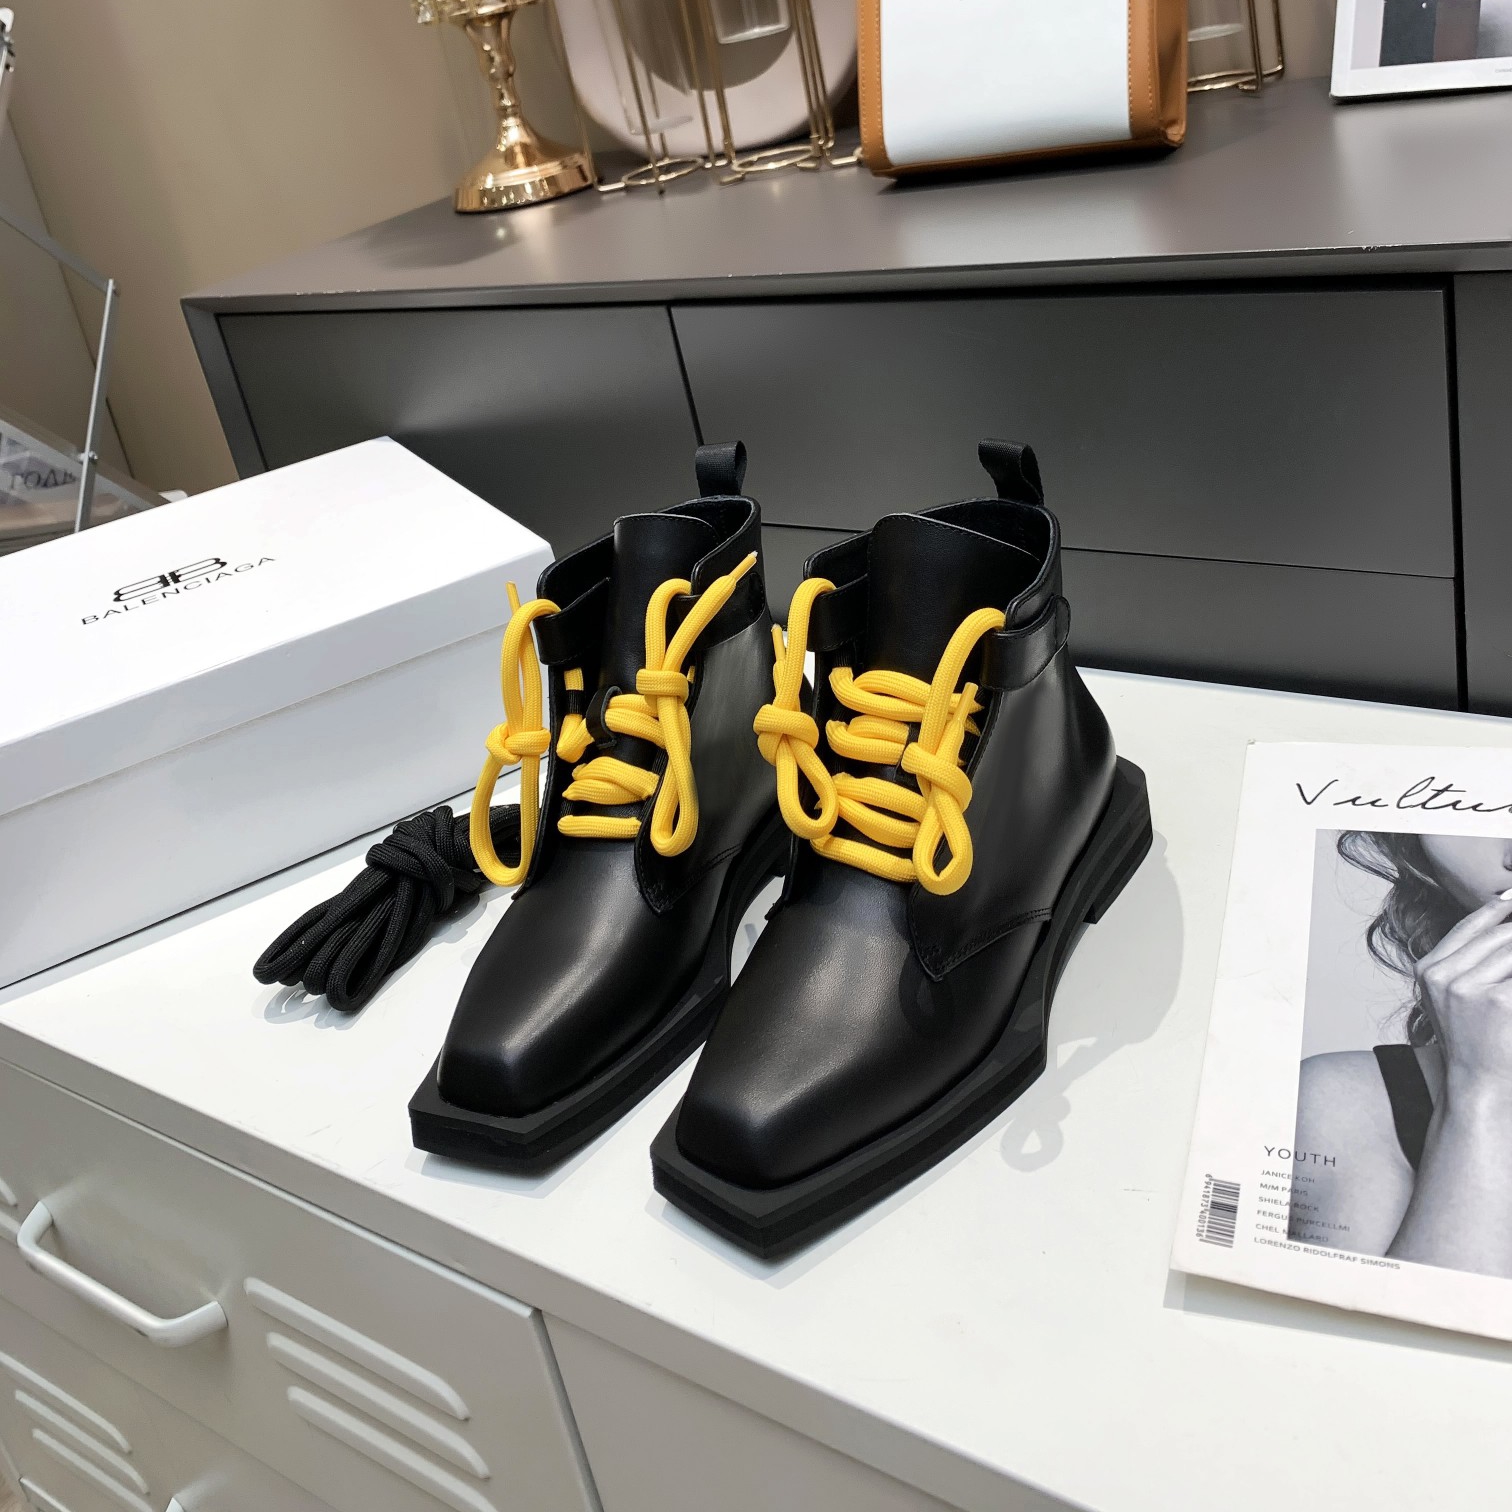 Жакшы сатуу Balenciaga мода люкс атактуу бренд Милан мода жумалыгы аялдар бренд бут кийимдер жана жасалма дизайнерлердин бут кийимдери, ошондой эле жогорку сапаттагы бренд согончогу